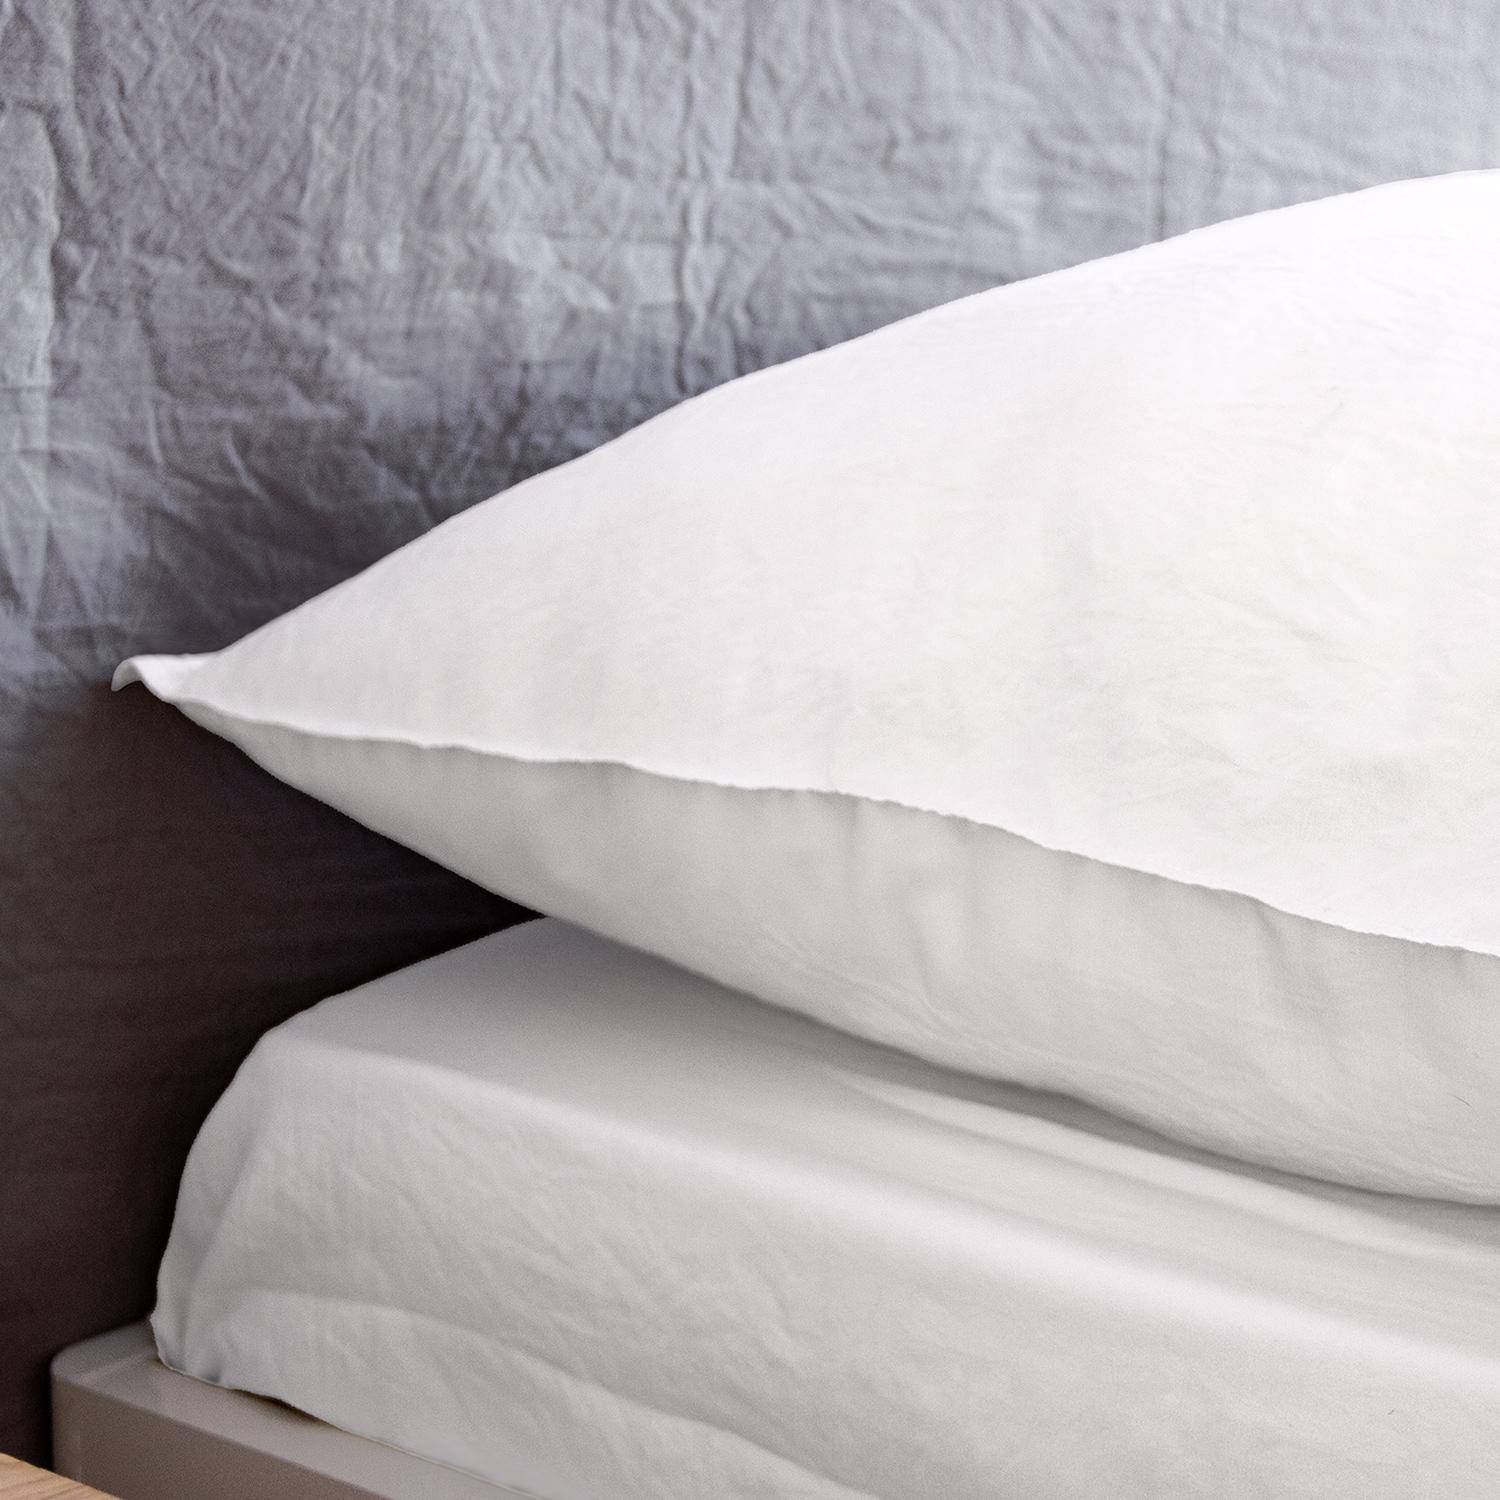 Bettwäsche-Set aus vorgewaschener Mikrofaser in weiß 260 x 240 cm für Doppelbetten, 1 Bettbezug und 2 Kissenbezüge Photo3